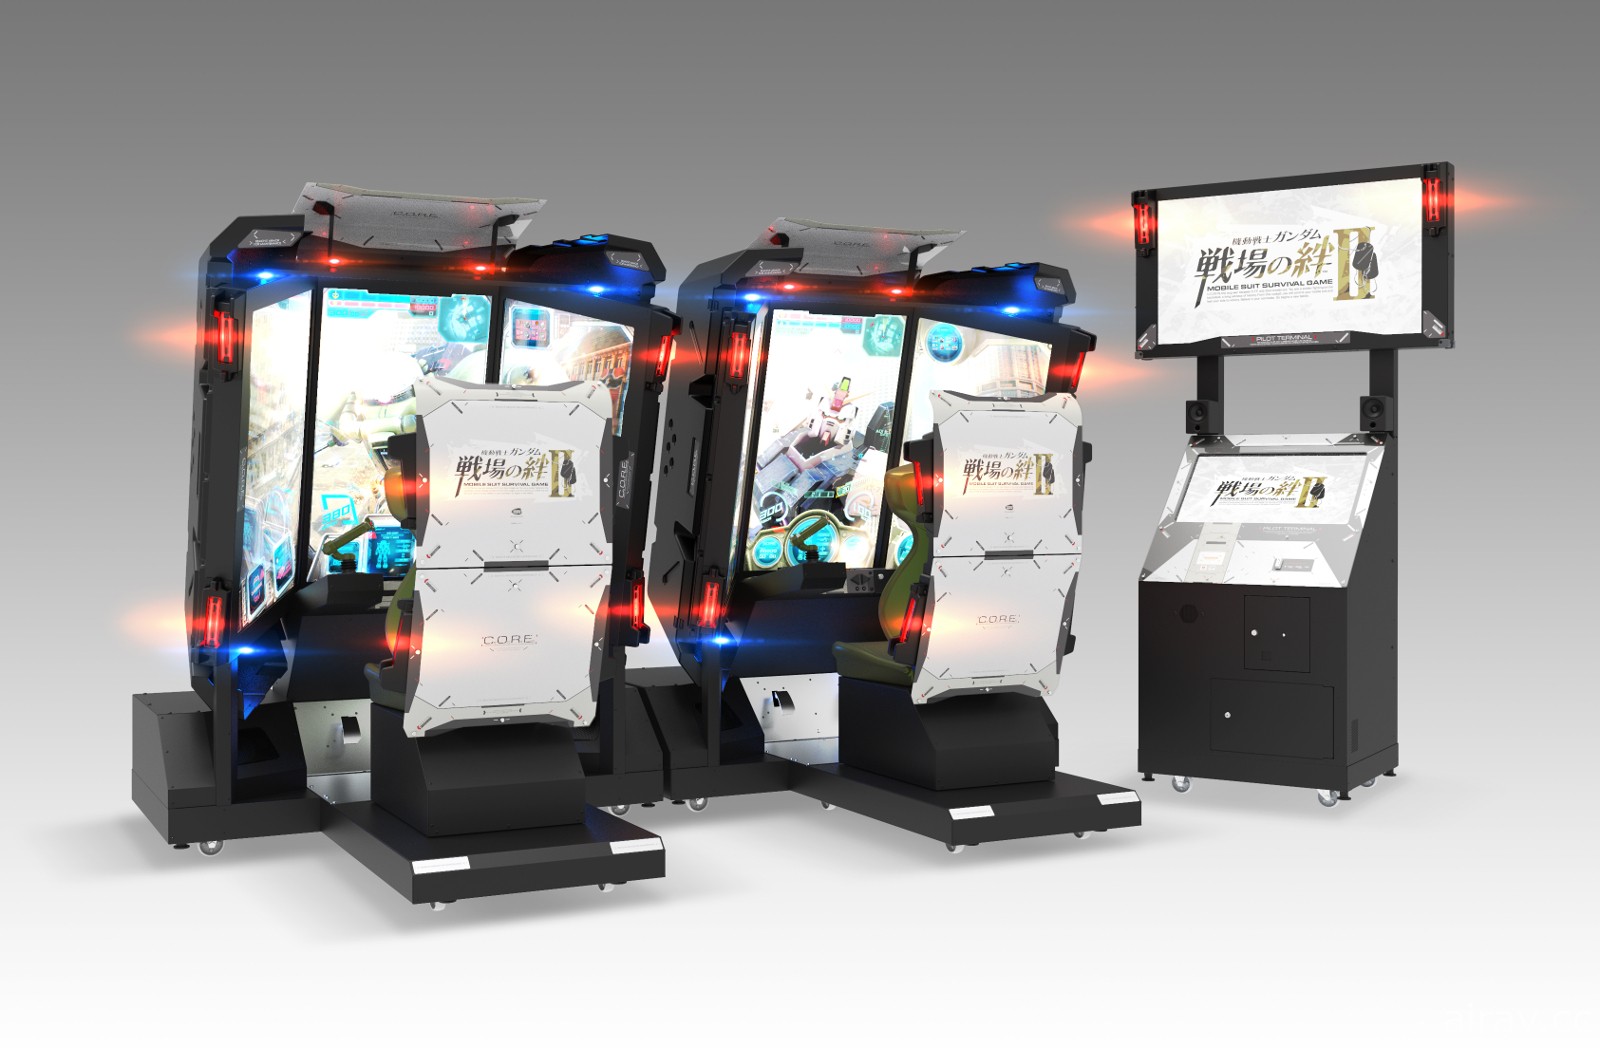 《機動戰士鋼彈 戰場之絆 II》揭露全新筐體設計 改採三螢幕重現 MS 對戰臨場感